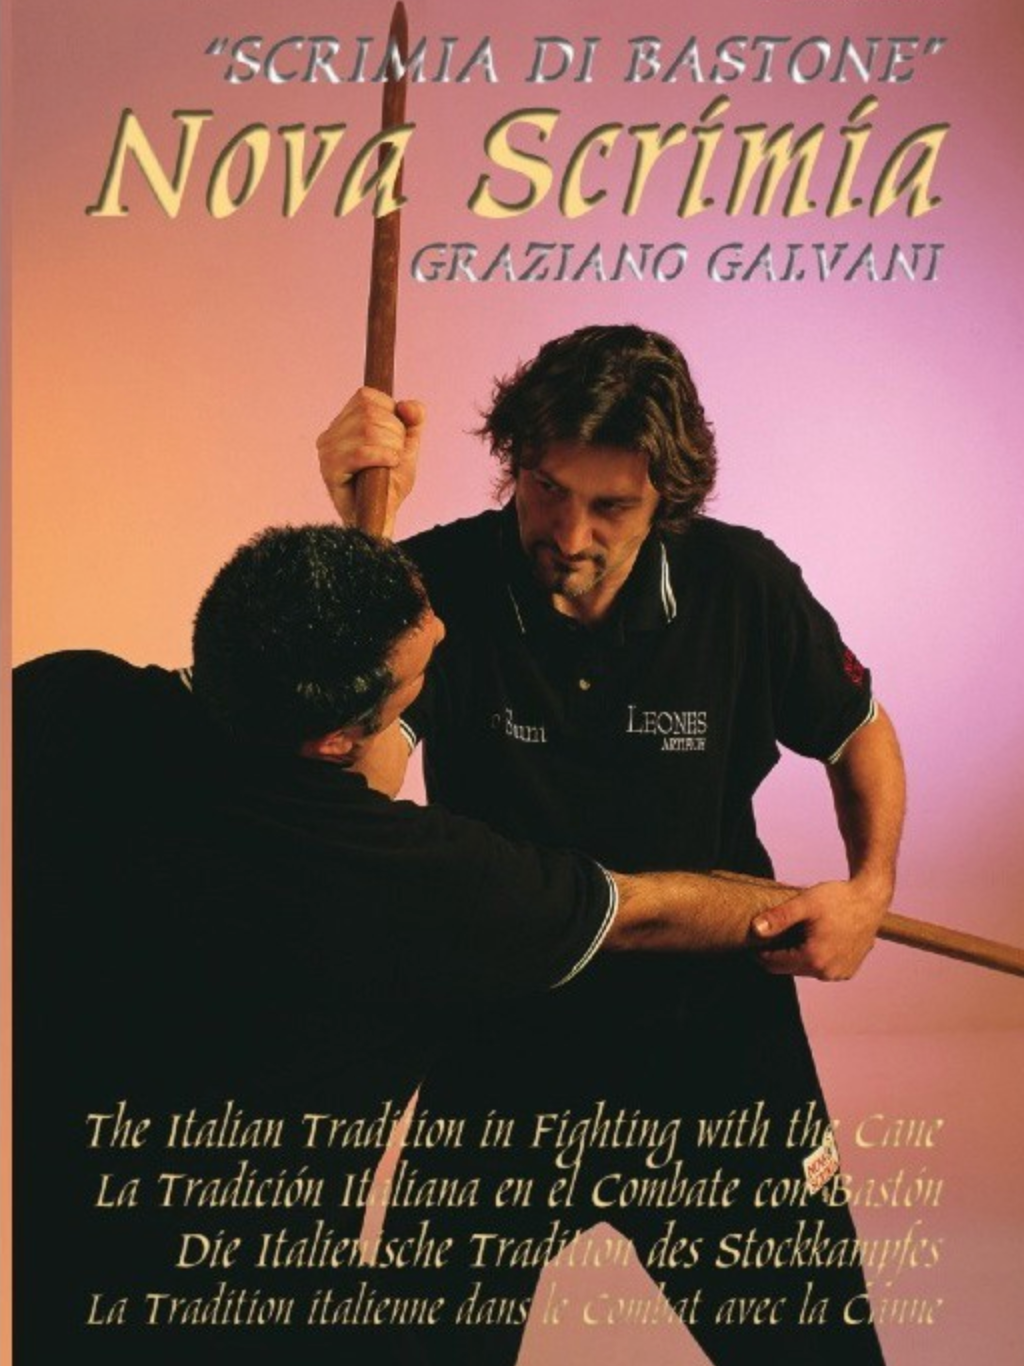 Nova Scrimia Bastone The Cane DVD by Graziano Galvani - Budovideos Inc